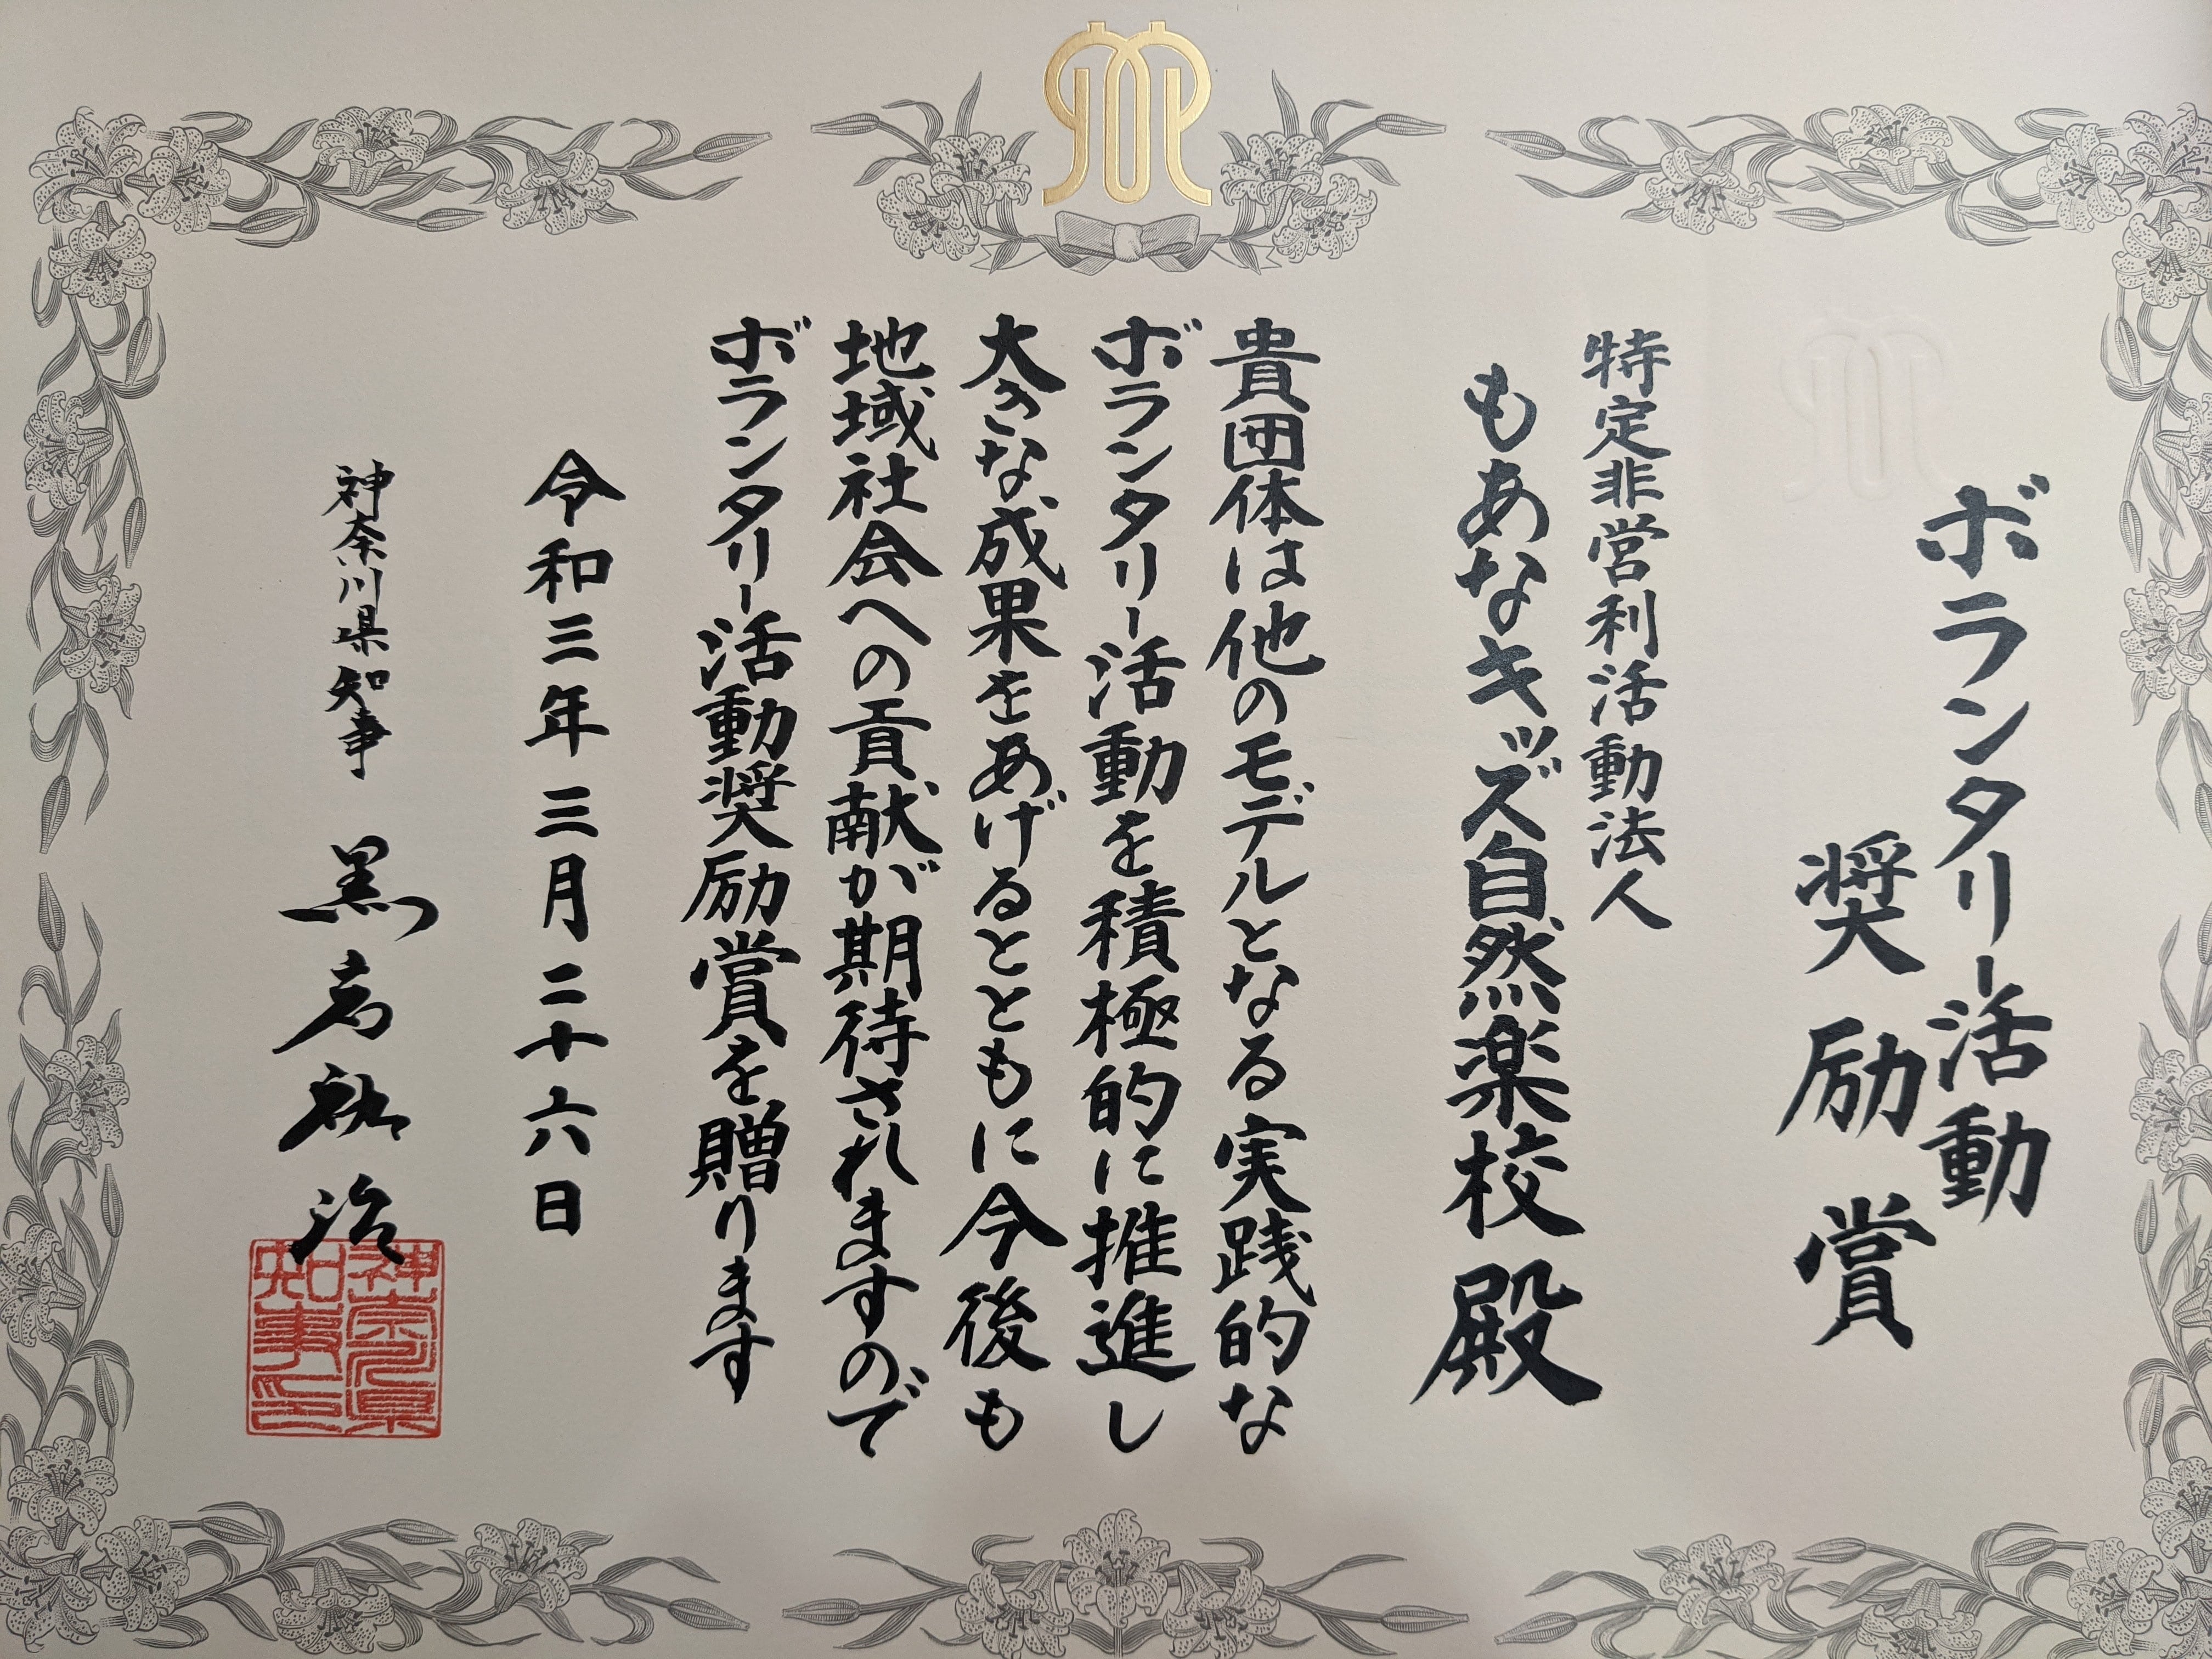 【神奈川県】 令和2年度ボランタリー活動奨励賞を受賞しました